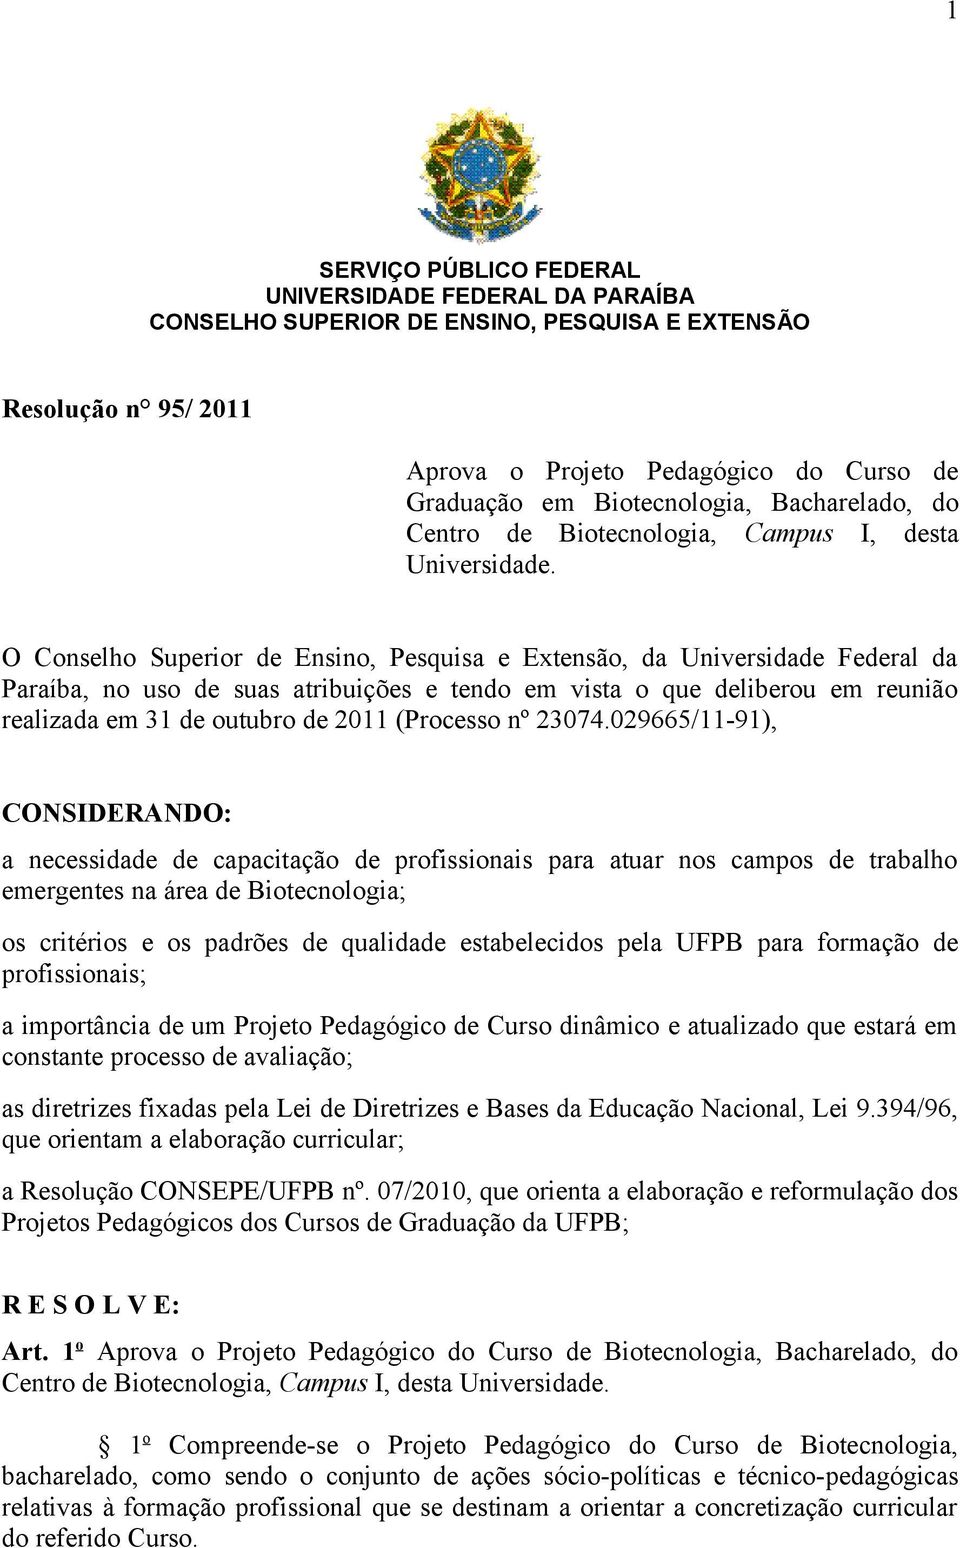 O Conselho Superior de Ensino, Pesquisa e Extensão, da Universidade Federal da Paraíba, no uso de suas atribuições e tendo em vista o que deliberou em reunião realizada em 31 de outubro de 2011